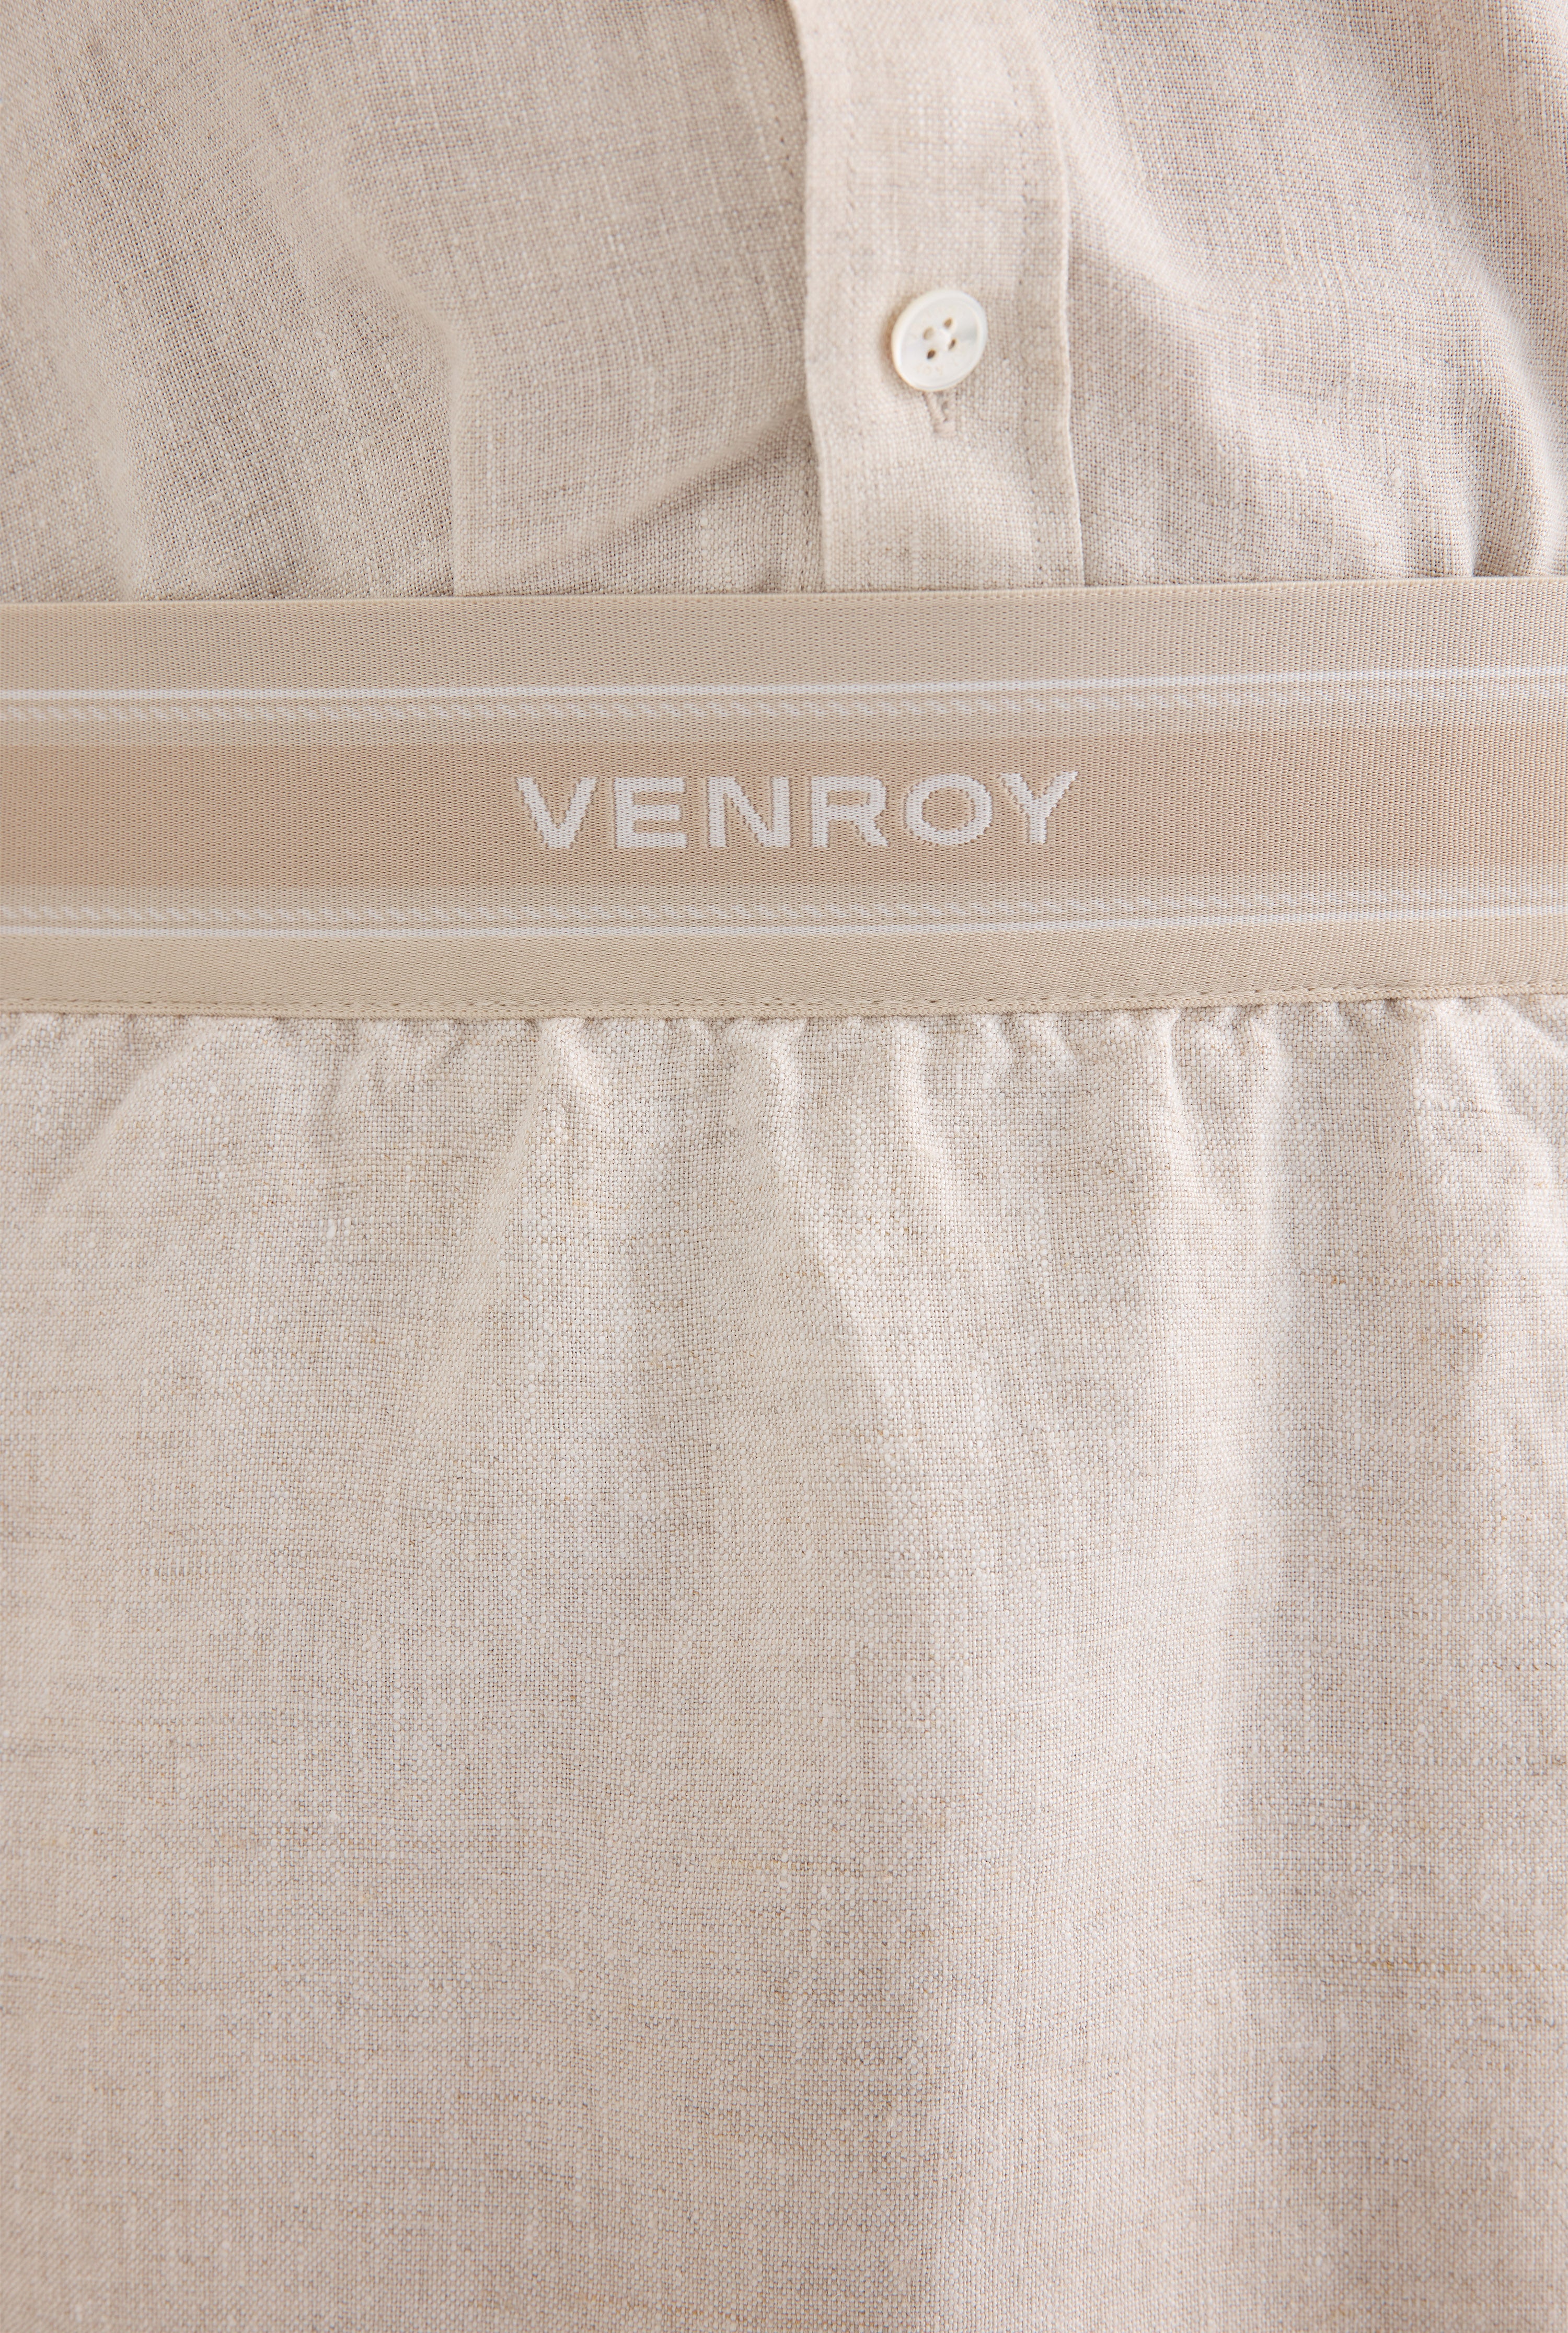 Lounge Skirt - Sand/Venroy Logo